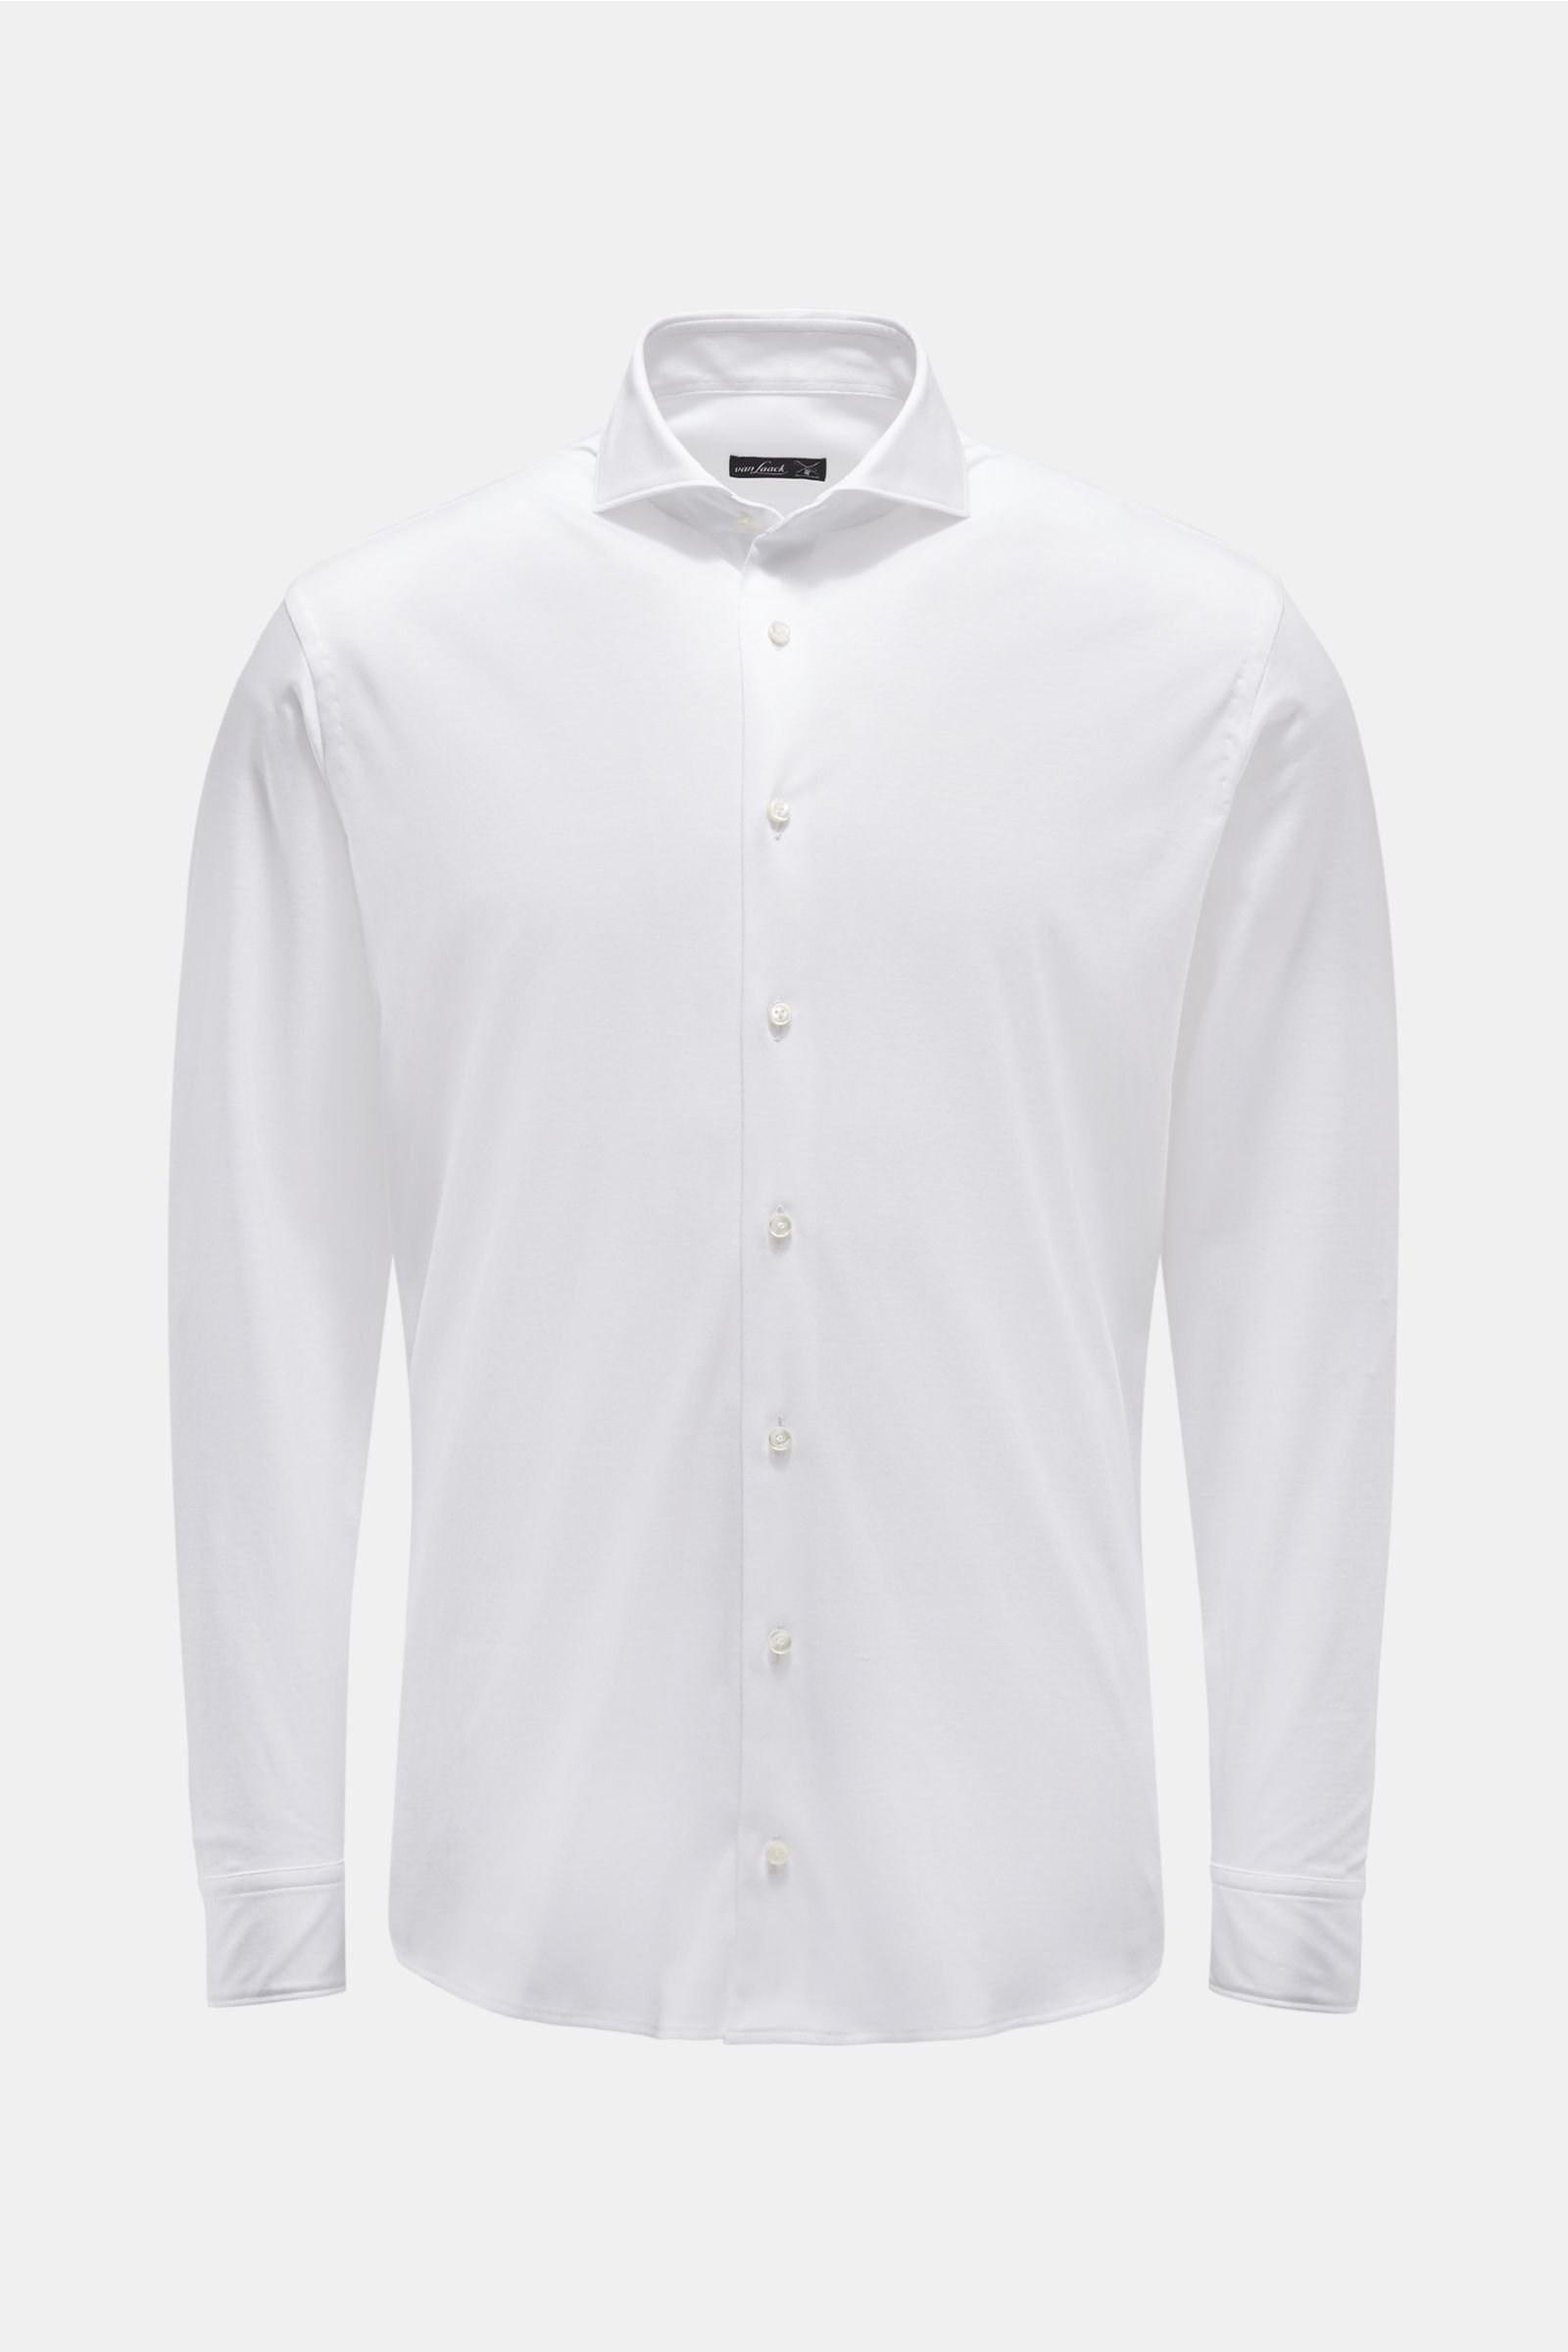 Jersey-Hemd schmaler Kragen 'M-Per-L' weiß